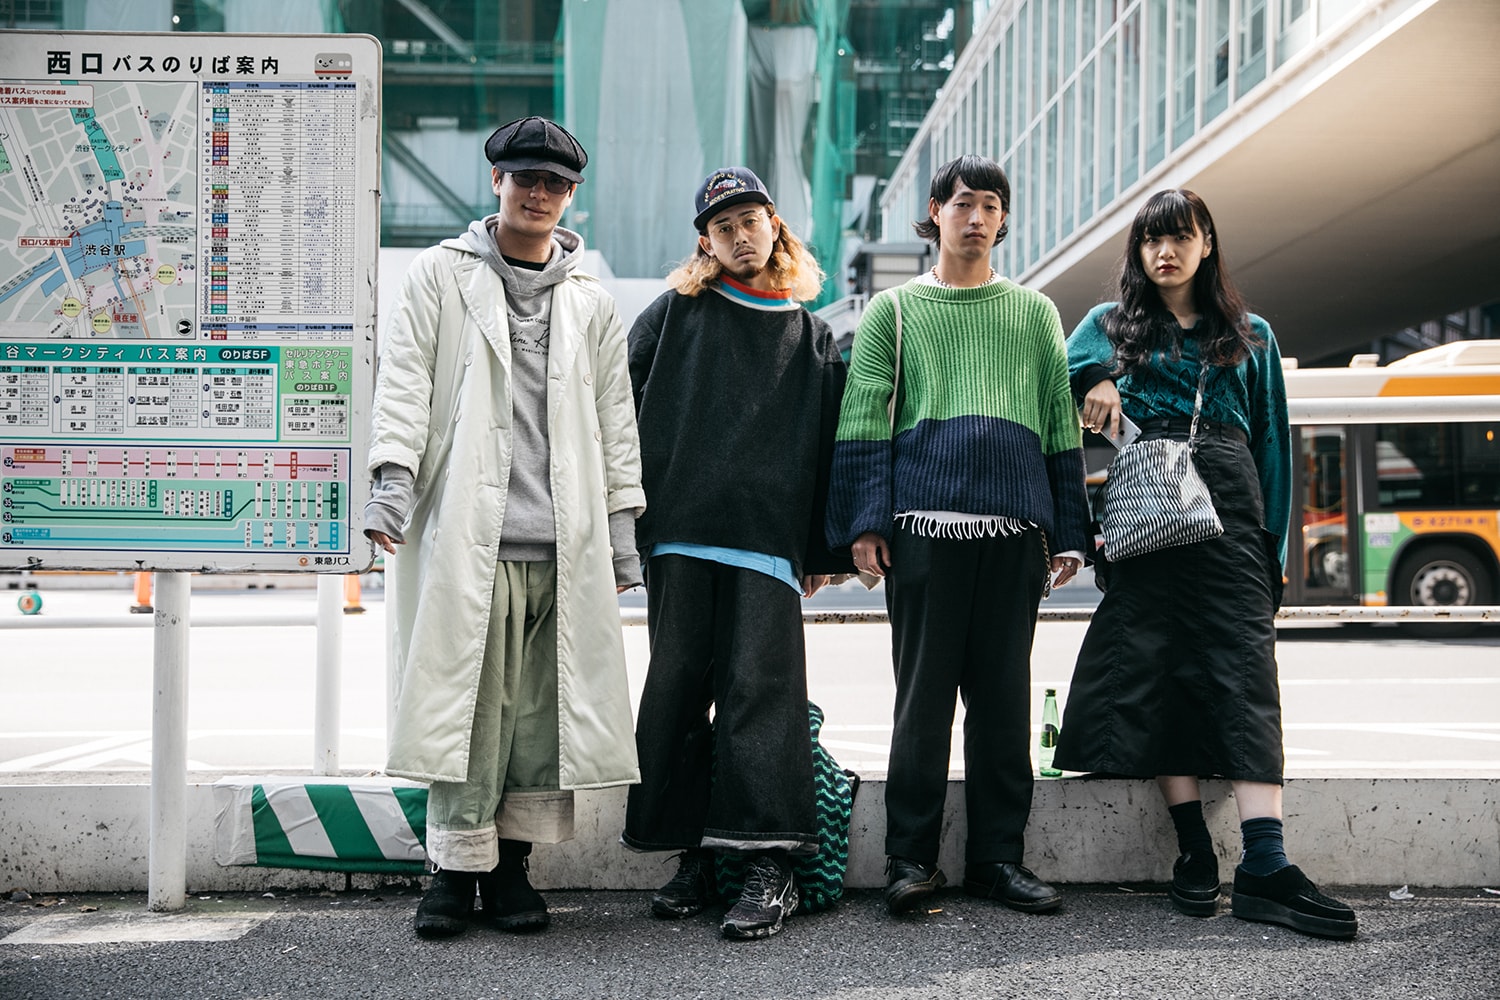 2018 봄 여름 시즌 도쿄 패션위크 스트릿패션 tokyo fashion week 2018 spring summer street snaps